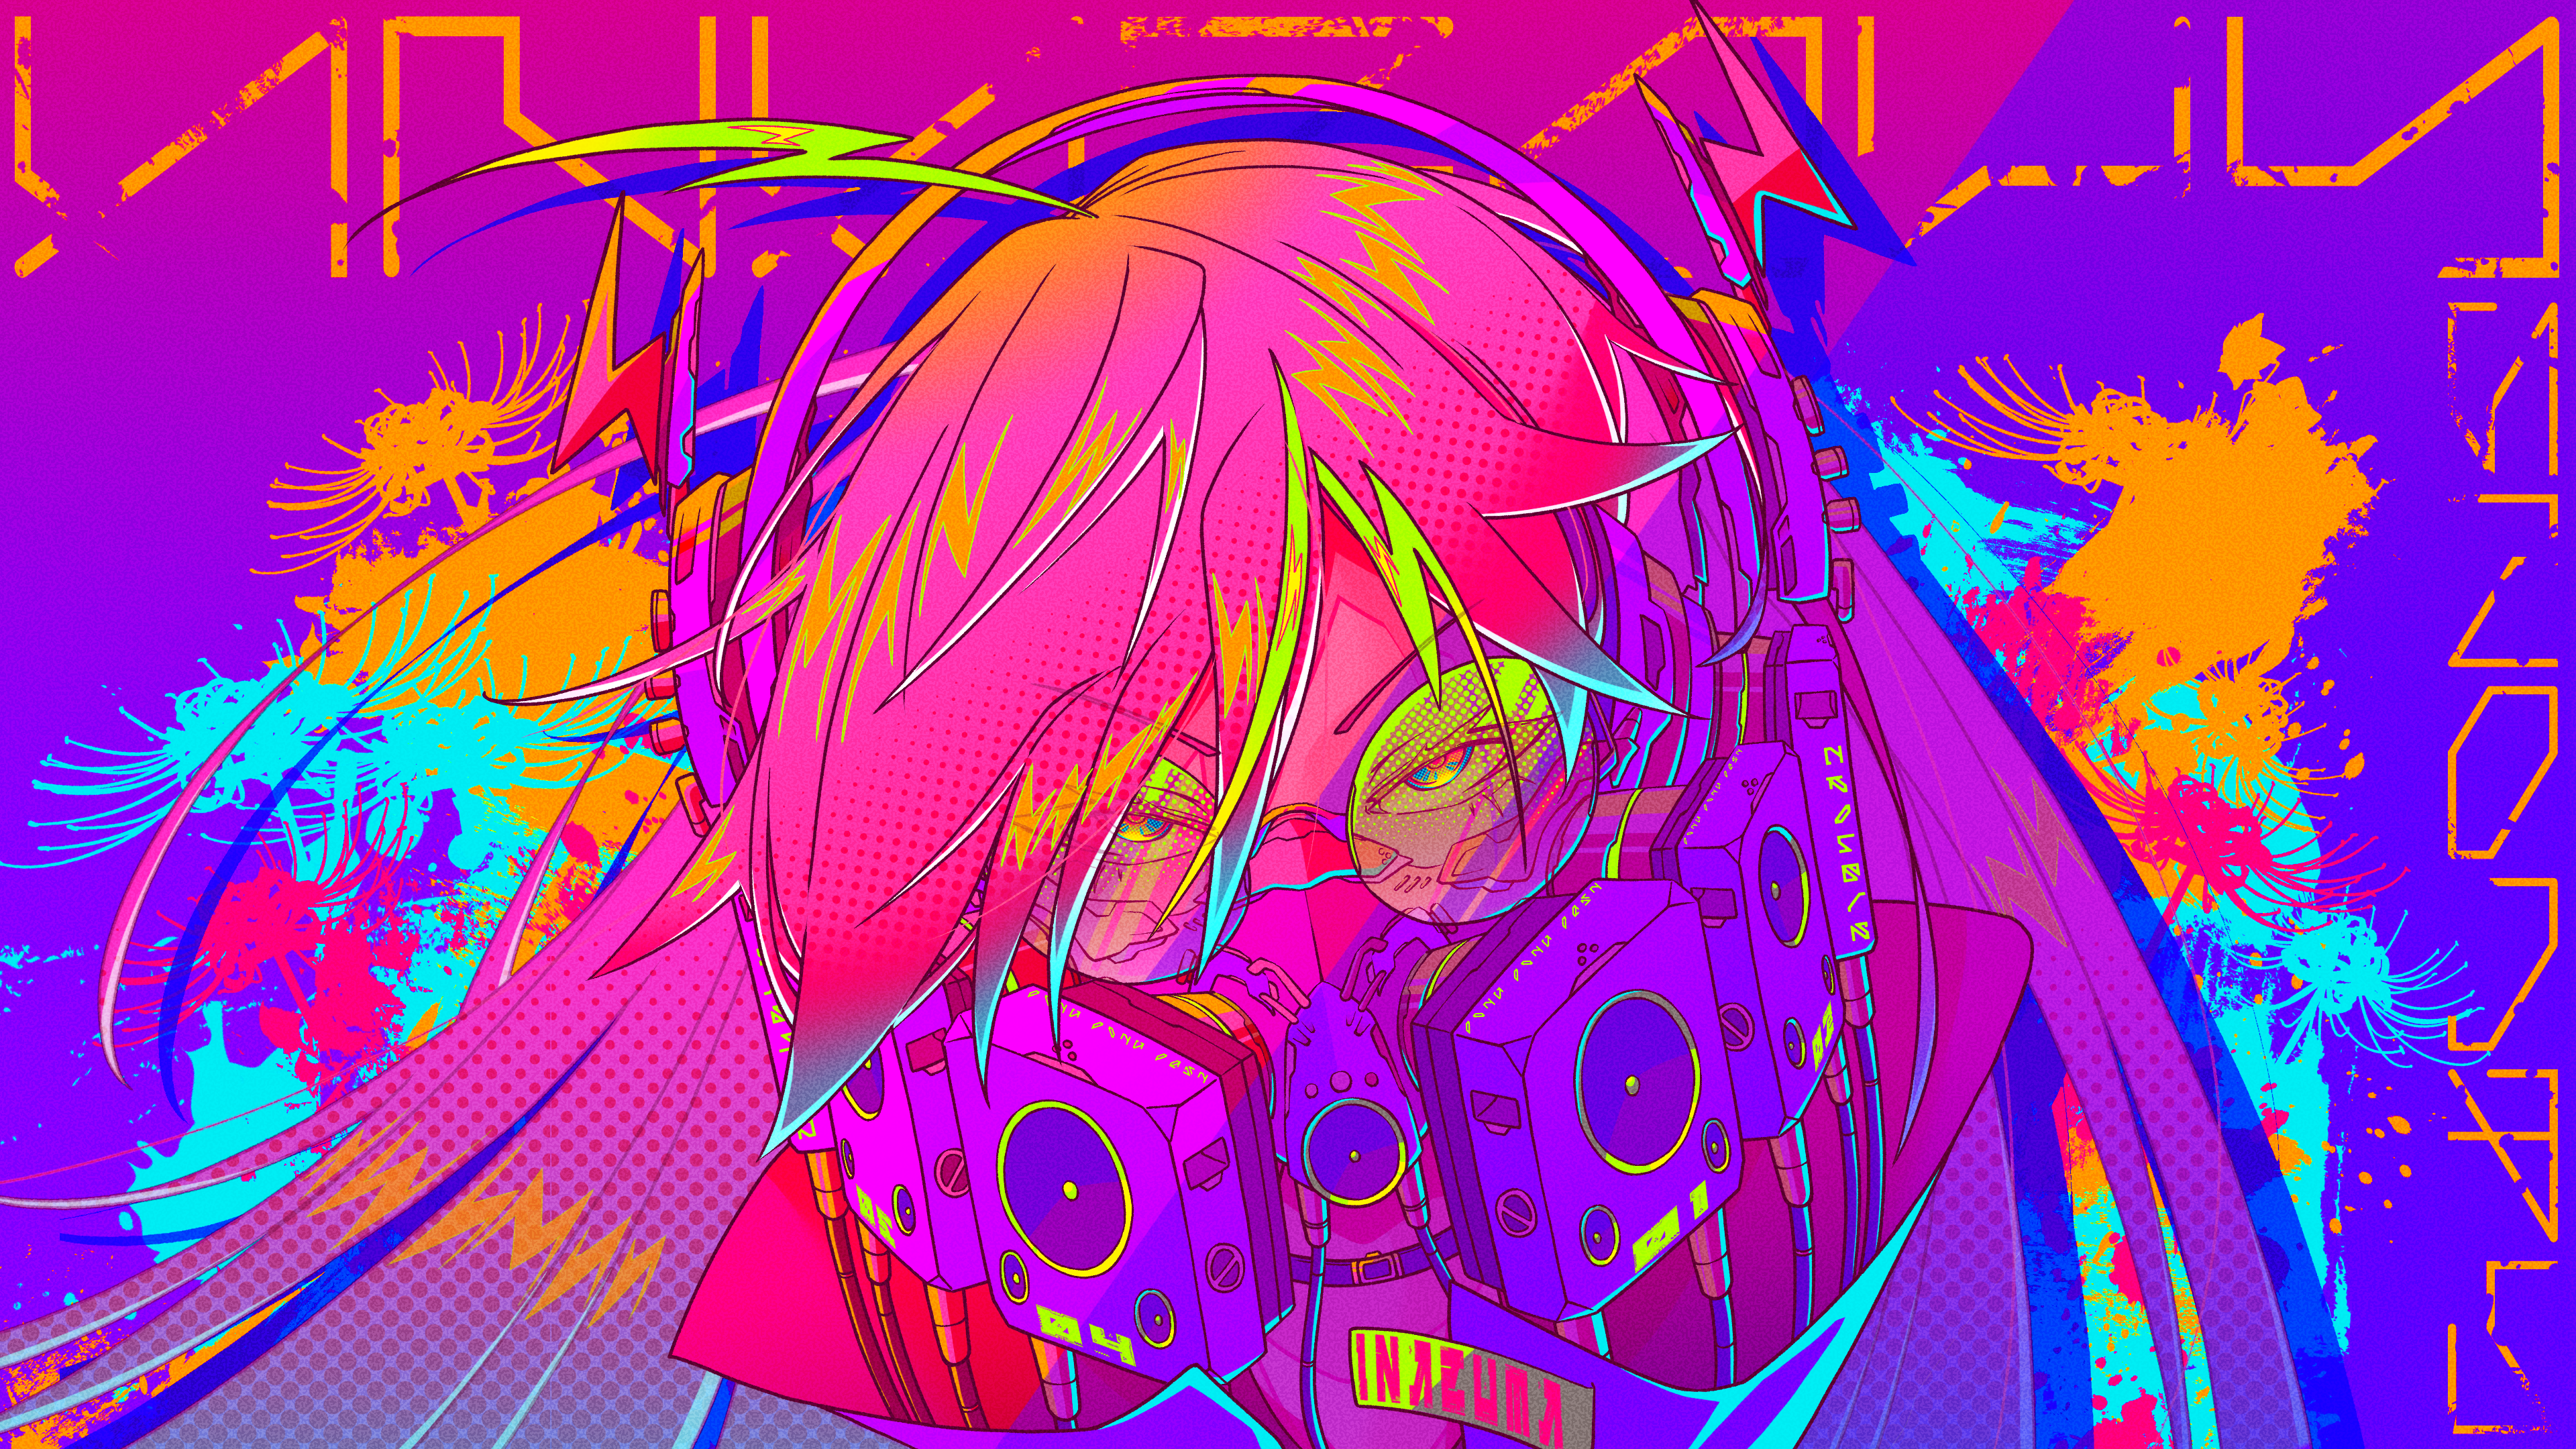 anime, anime girls, cyberpunk, artwork